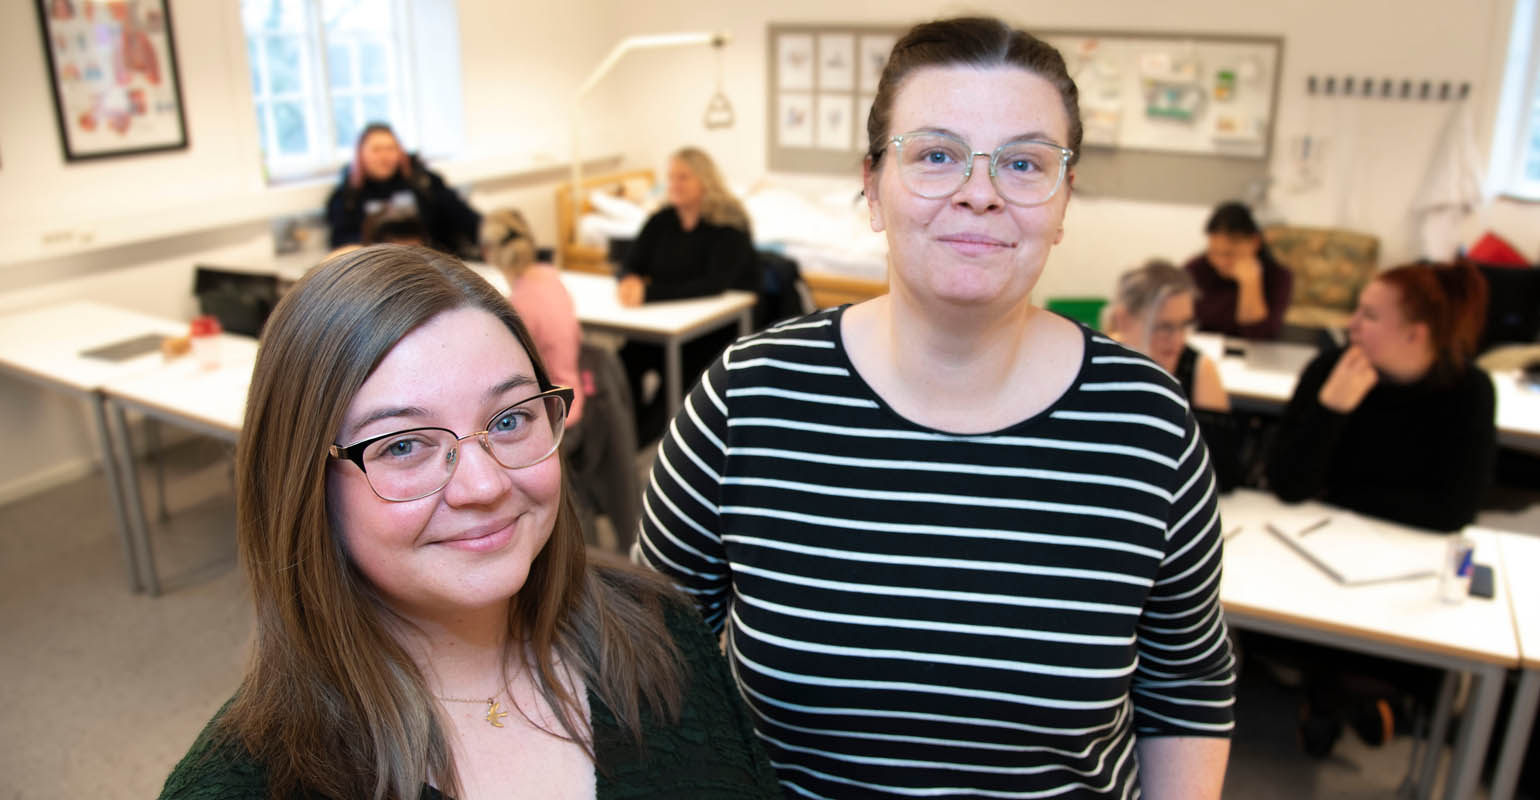 Undersköterskorna Hanna och Emma i förgrunden och i bakgrunden elever från Svalöfs gymnasiums vård- och omsorgsprogram.